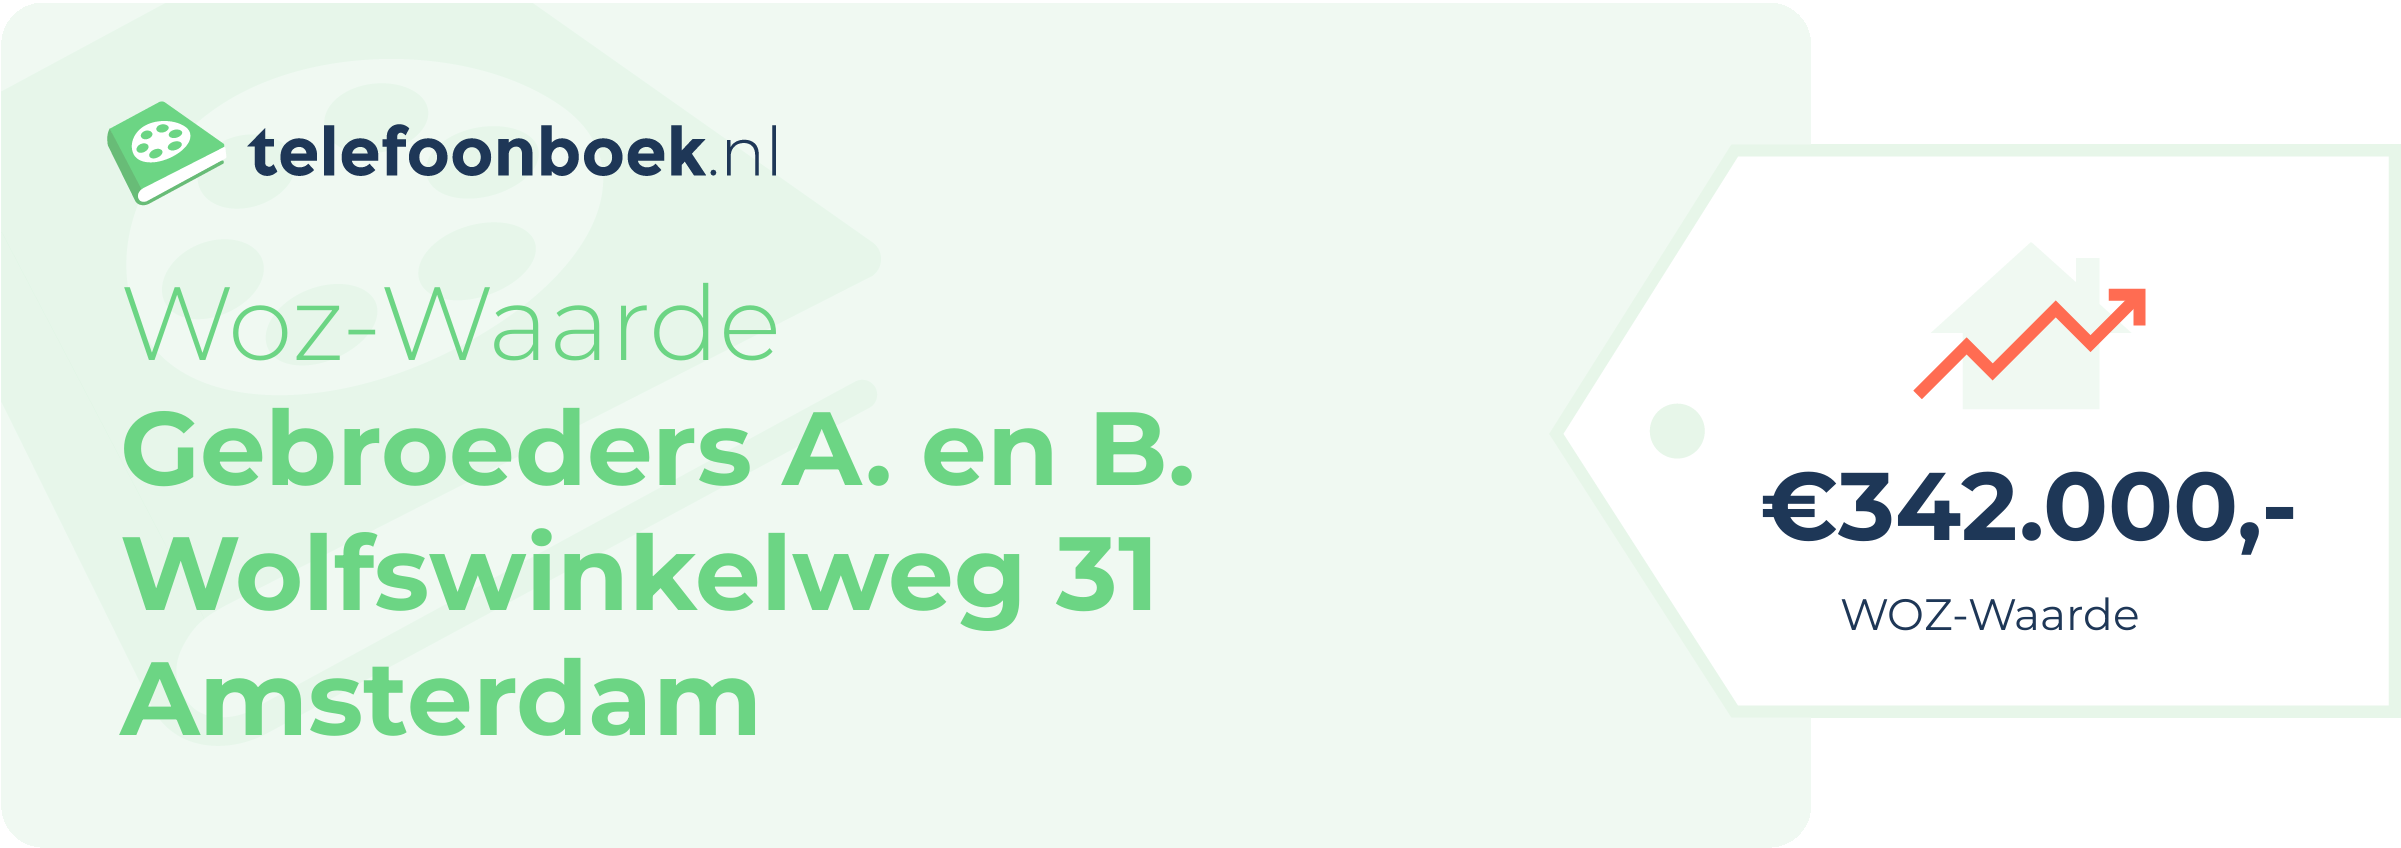 WOZ-waarde Gebroeders A. En B. Wolfswinkelweg 31 Amsterdam